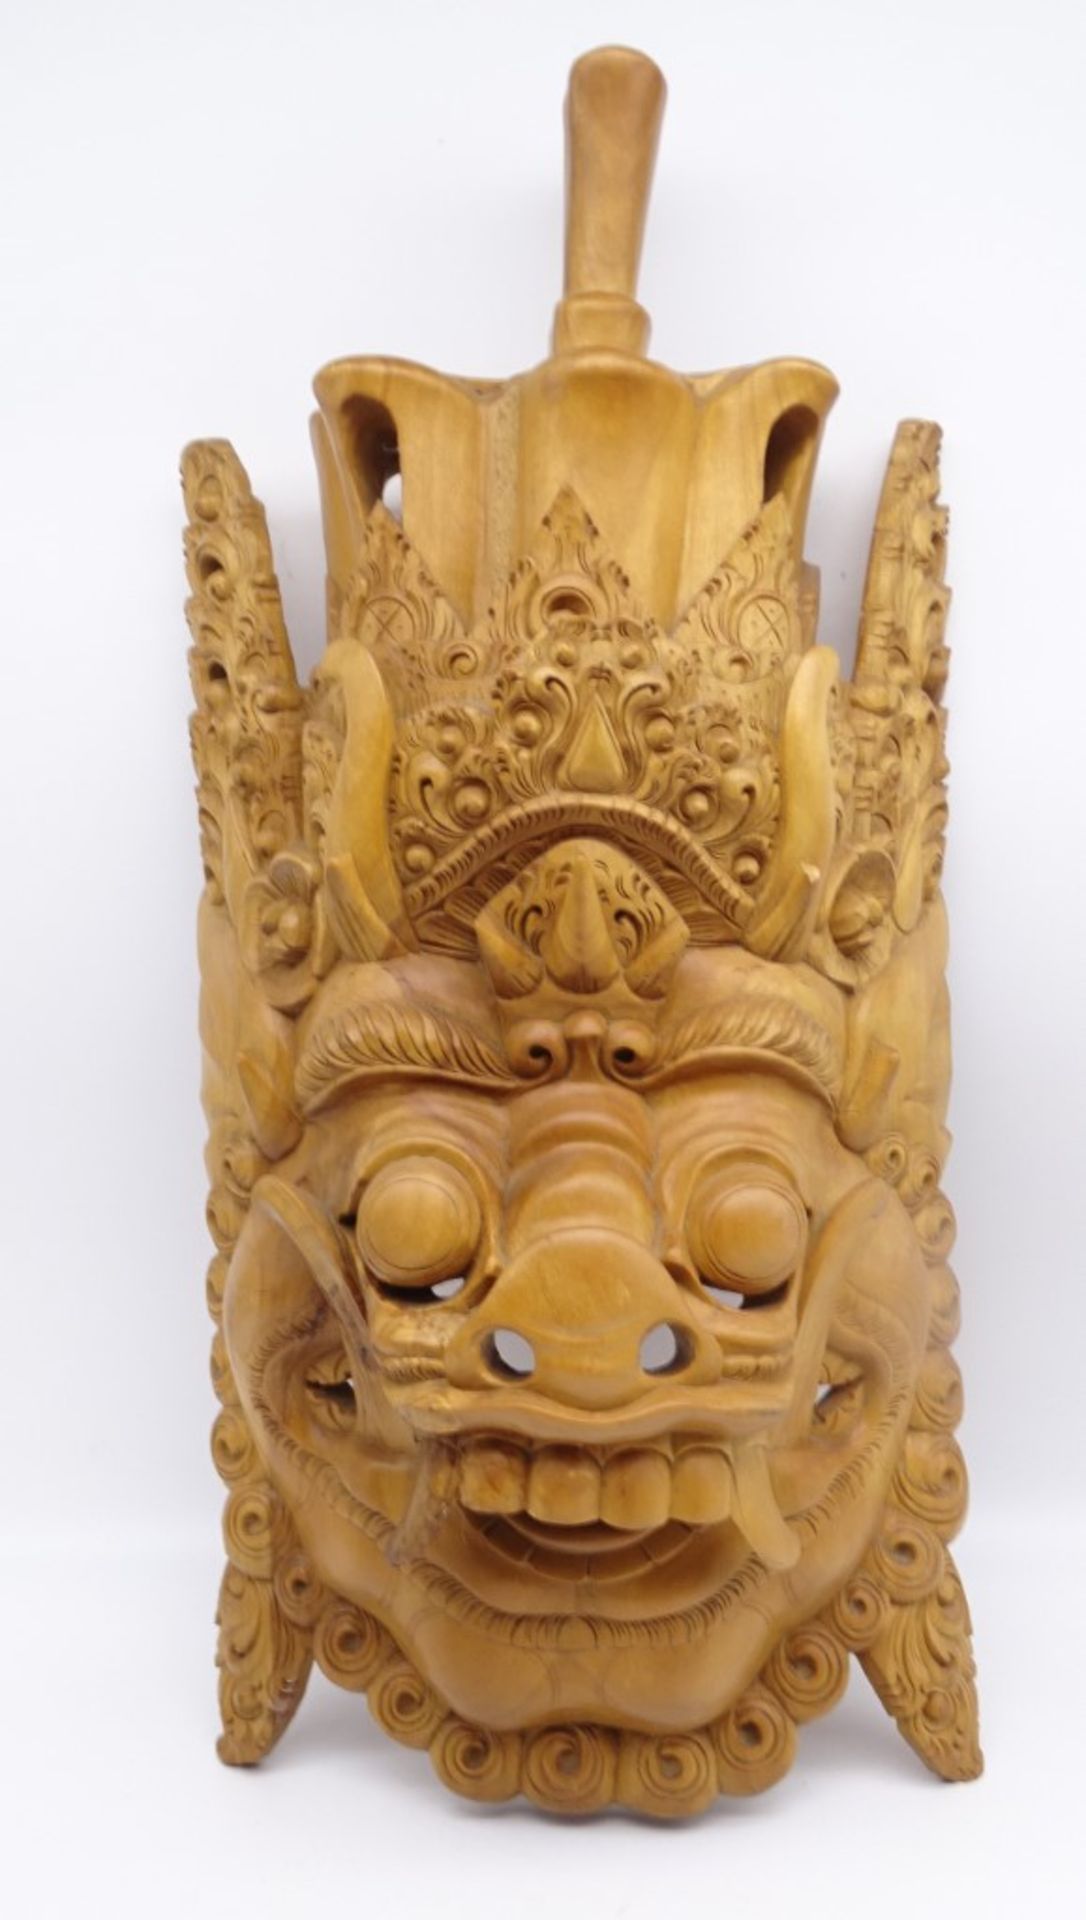 Balinesische Barong-Maske aus Holz, 56 x 26,5 cm, im Mundwinkel rechte Seite Riss, leicht reinigung